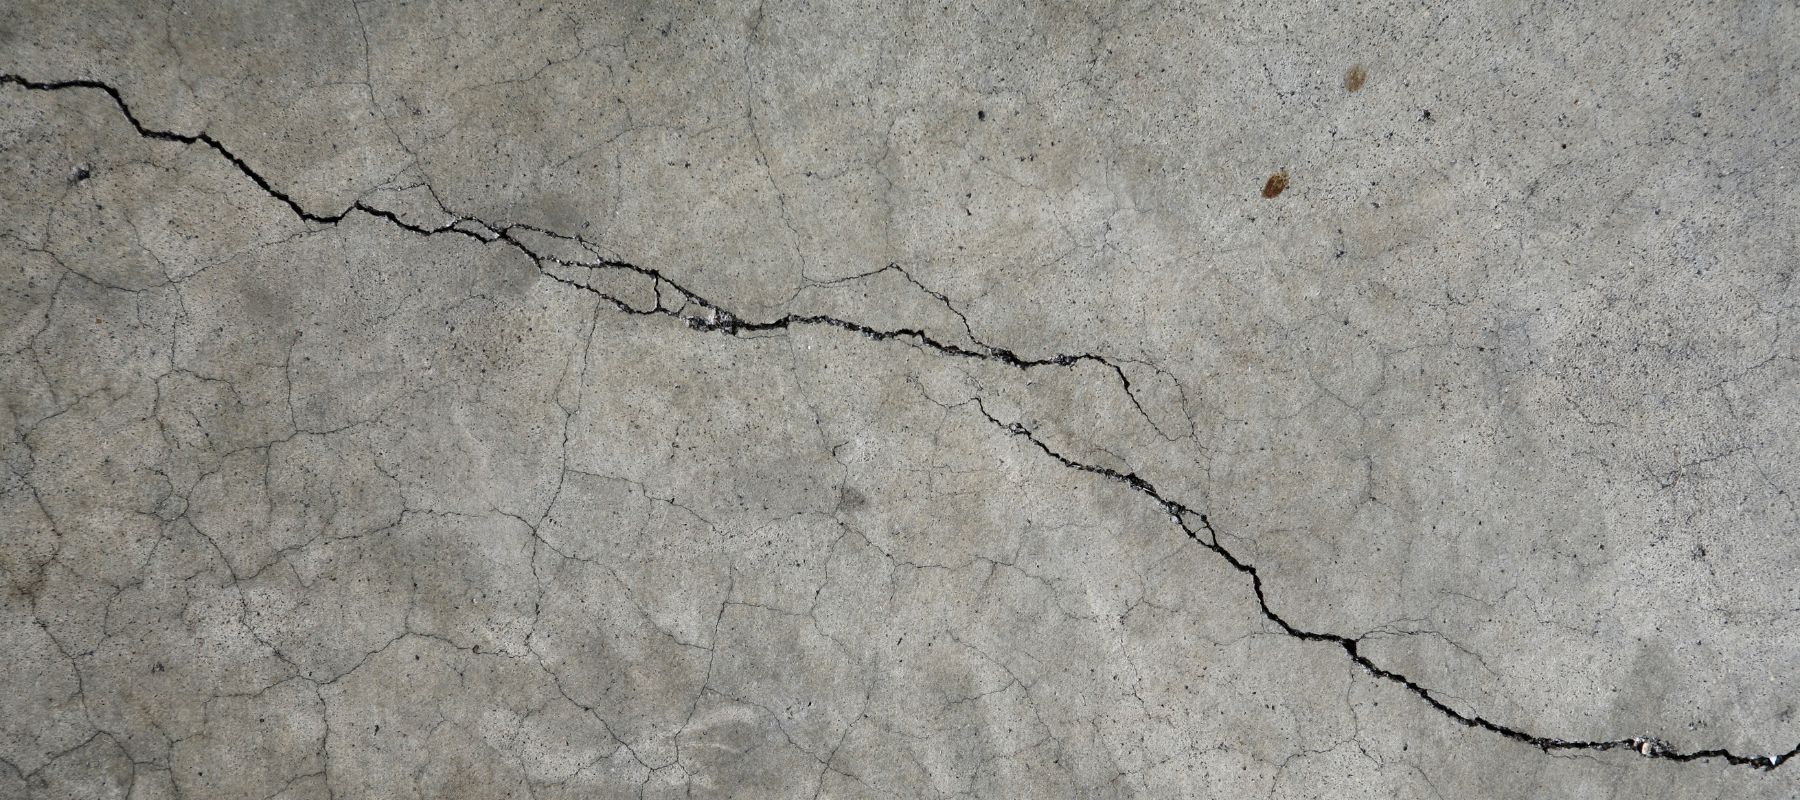 A crack in concrete